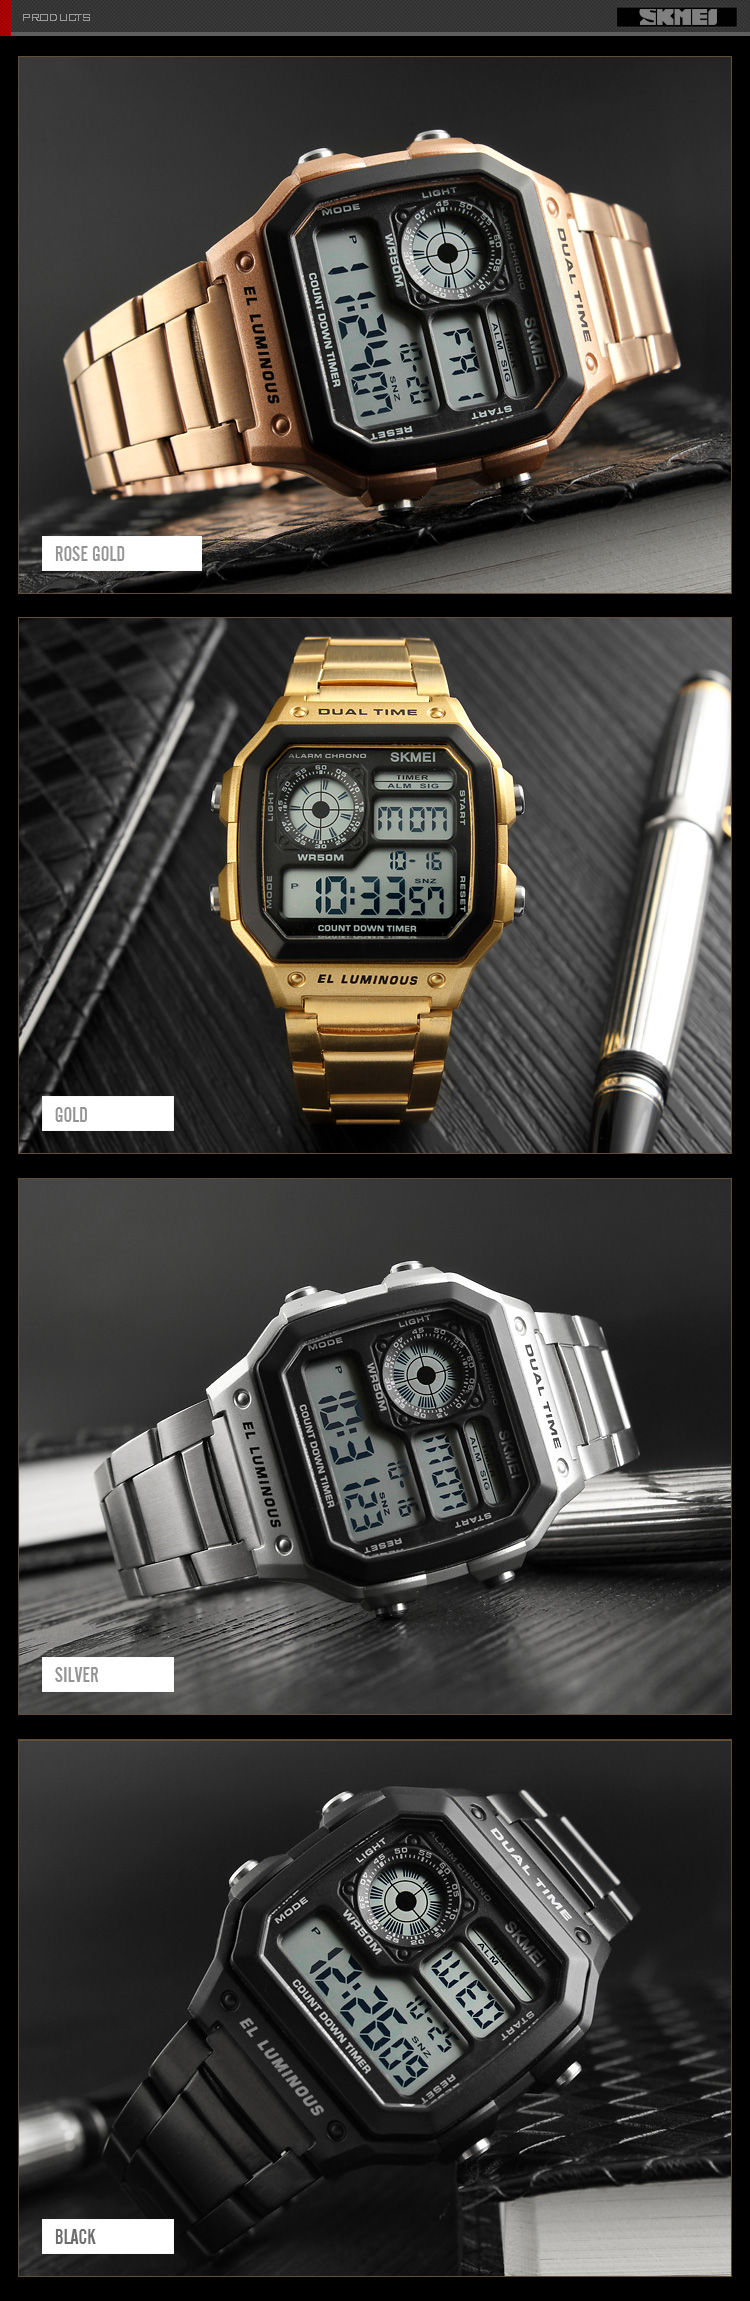 รูปภาพเพิ่มเติมของ นาฬิกาข้อมือผู้ชาย นาฬิกาสองระบบ ระบบดิจิตอล นาฬิกาข้อมือผู้ชายดิจิตอล กันน้ำ (ของแท้ 100% ) รุ่น skmei 1335